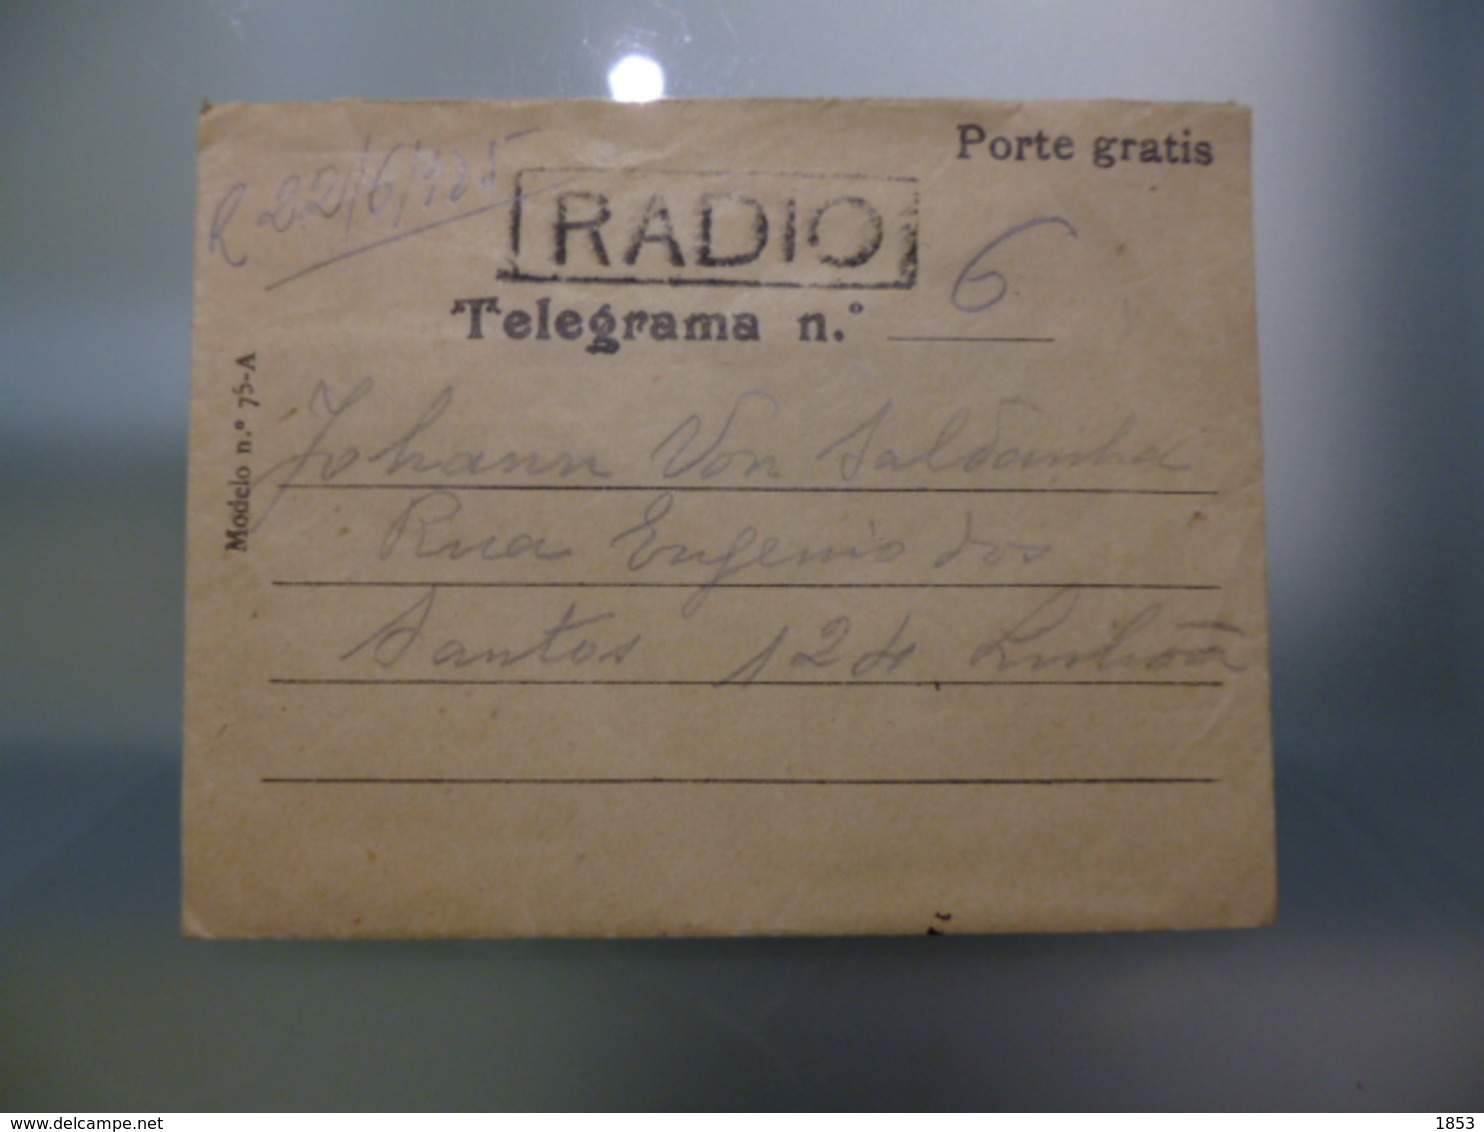 TELEGRAMA - PORTE GRATIS - VIA RÁDIO - Covers & Documents